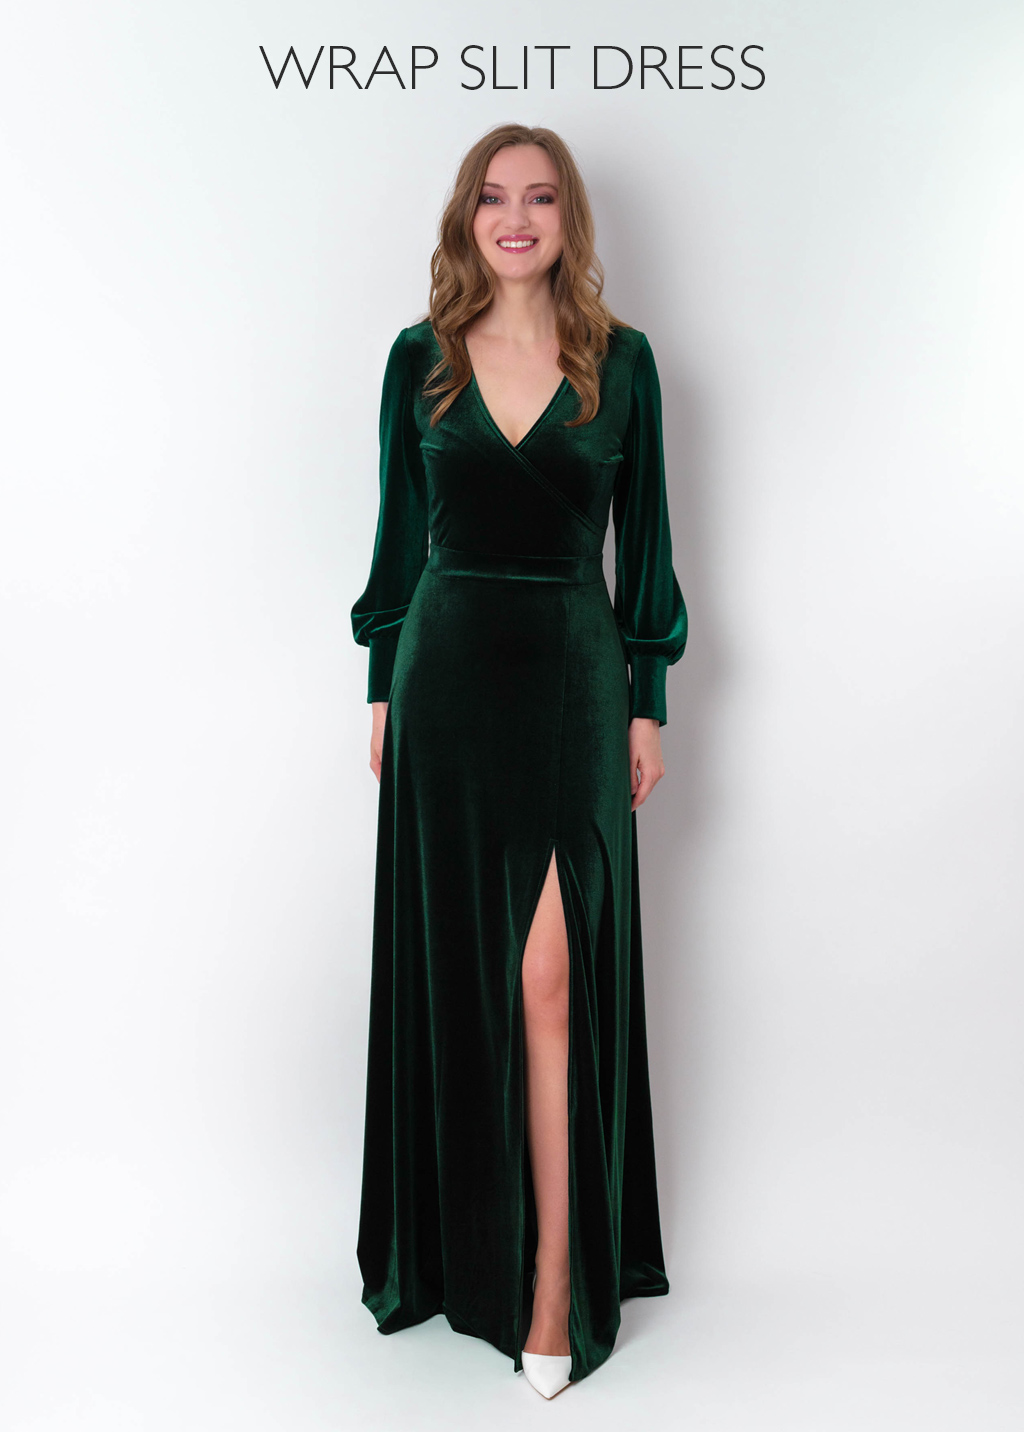 Emerald green velvet long dress